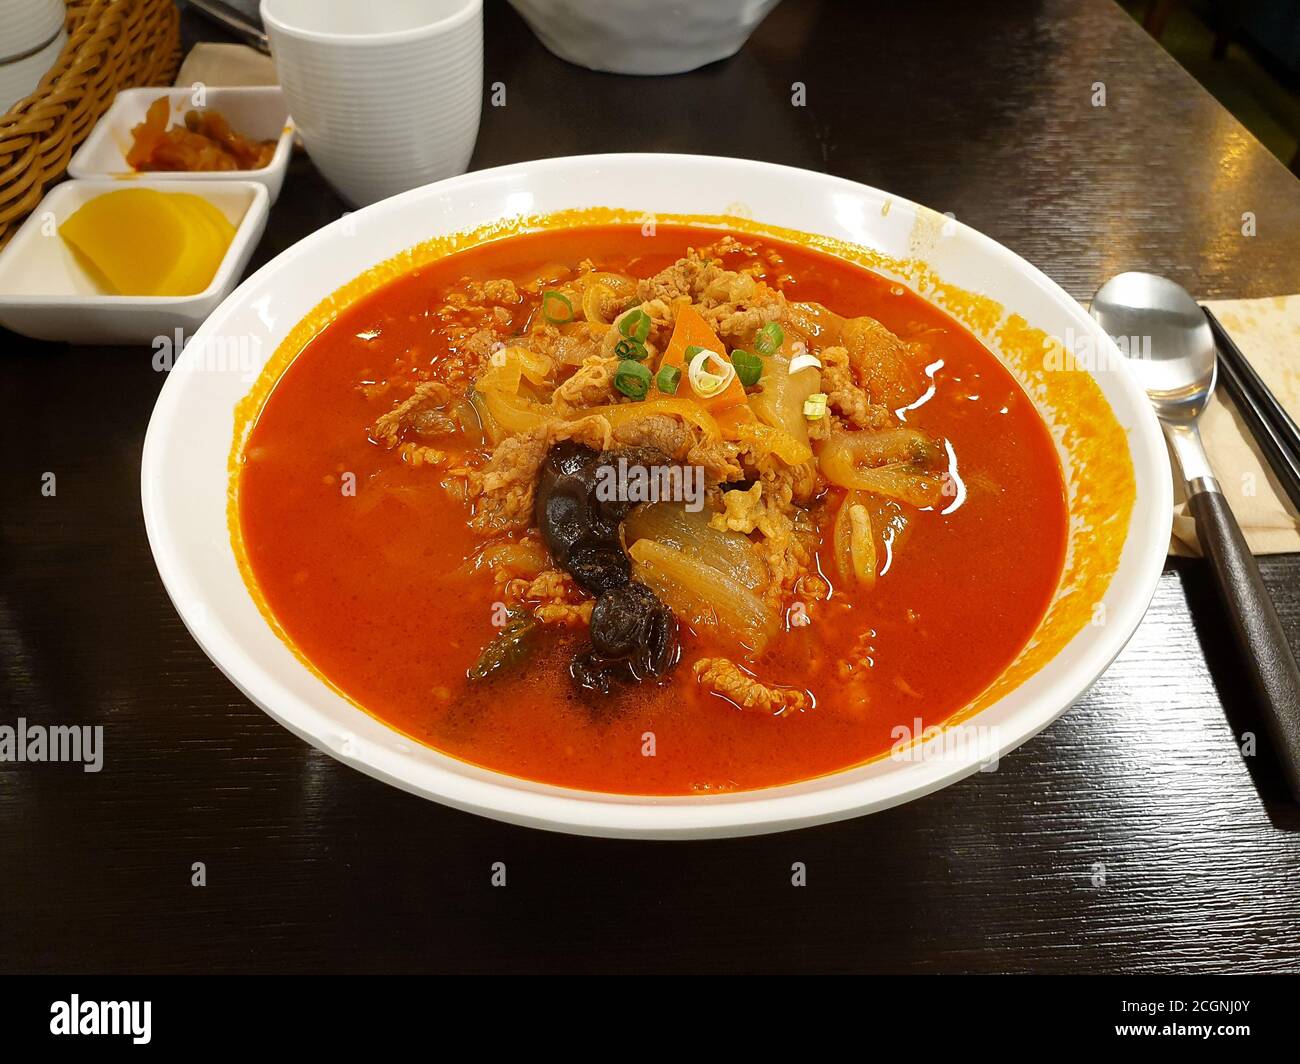 Jampong, zuppa di noodle coreana con brodo rosso e piccante a base di pesce aromatizzato con peperoncino in polvere. Cucina cinese in stile coreano. Foto Stock